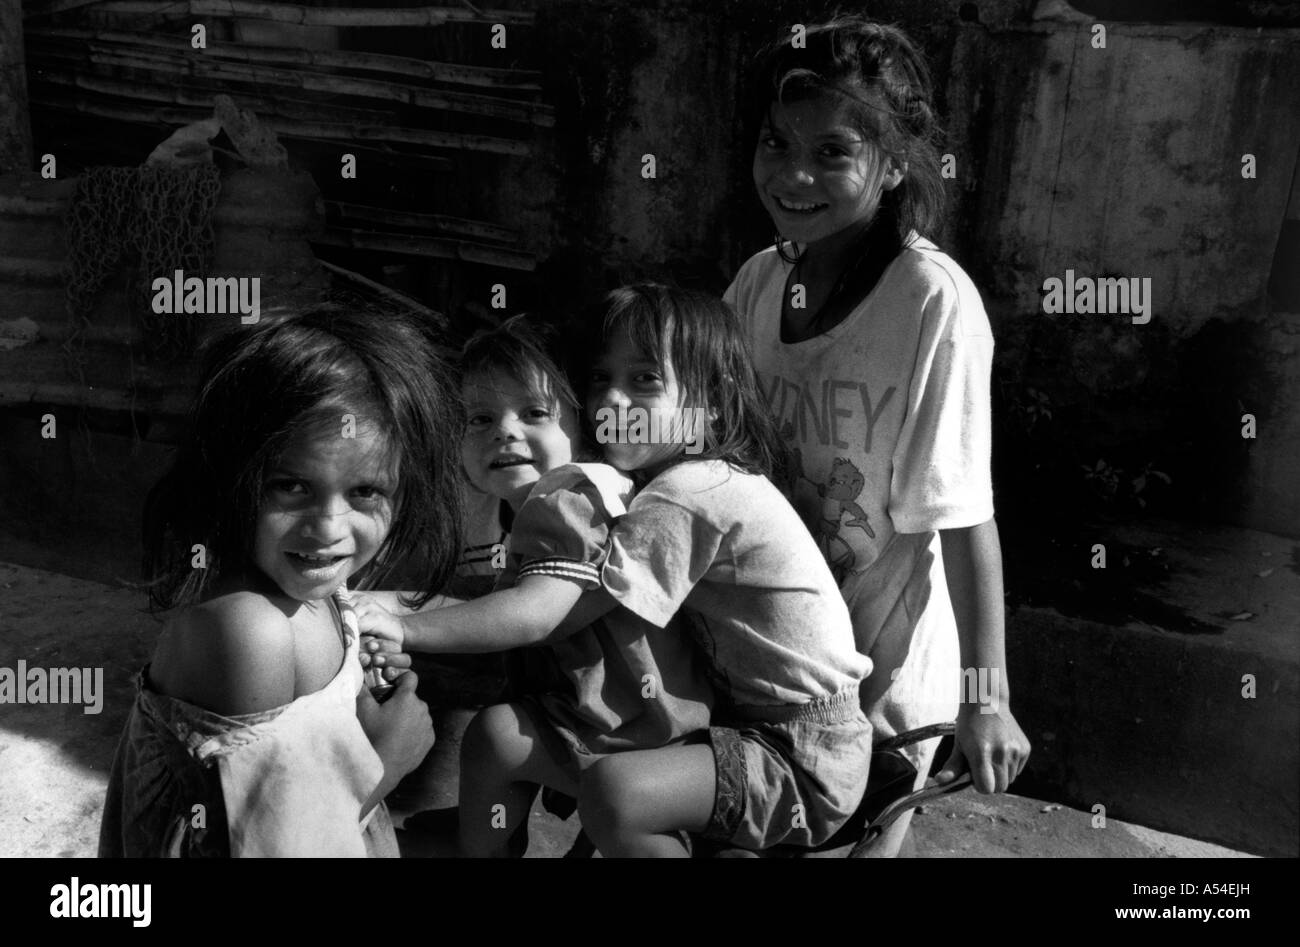 Painet hn2017 703 in bianco e nero di bambini di San salvador paese nazione in via di sviluppo meno sviluppati dal punto di vista economico la cultura Foto Stock